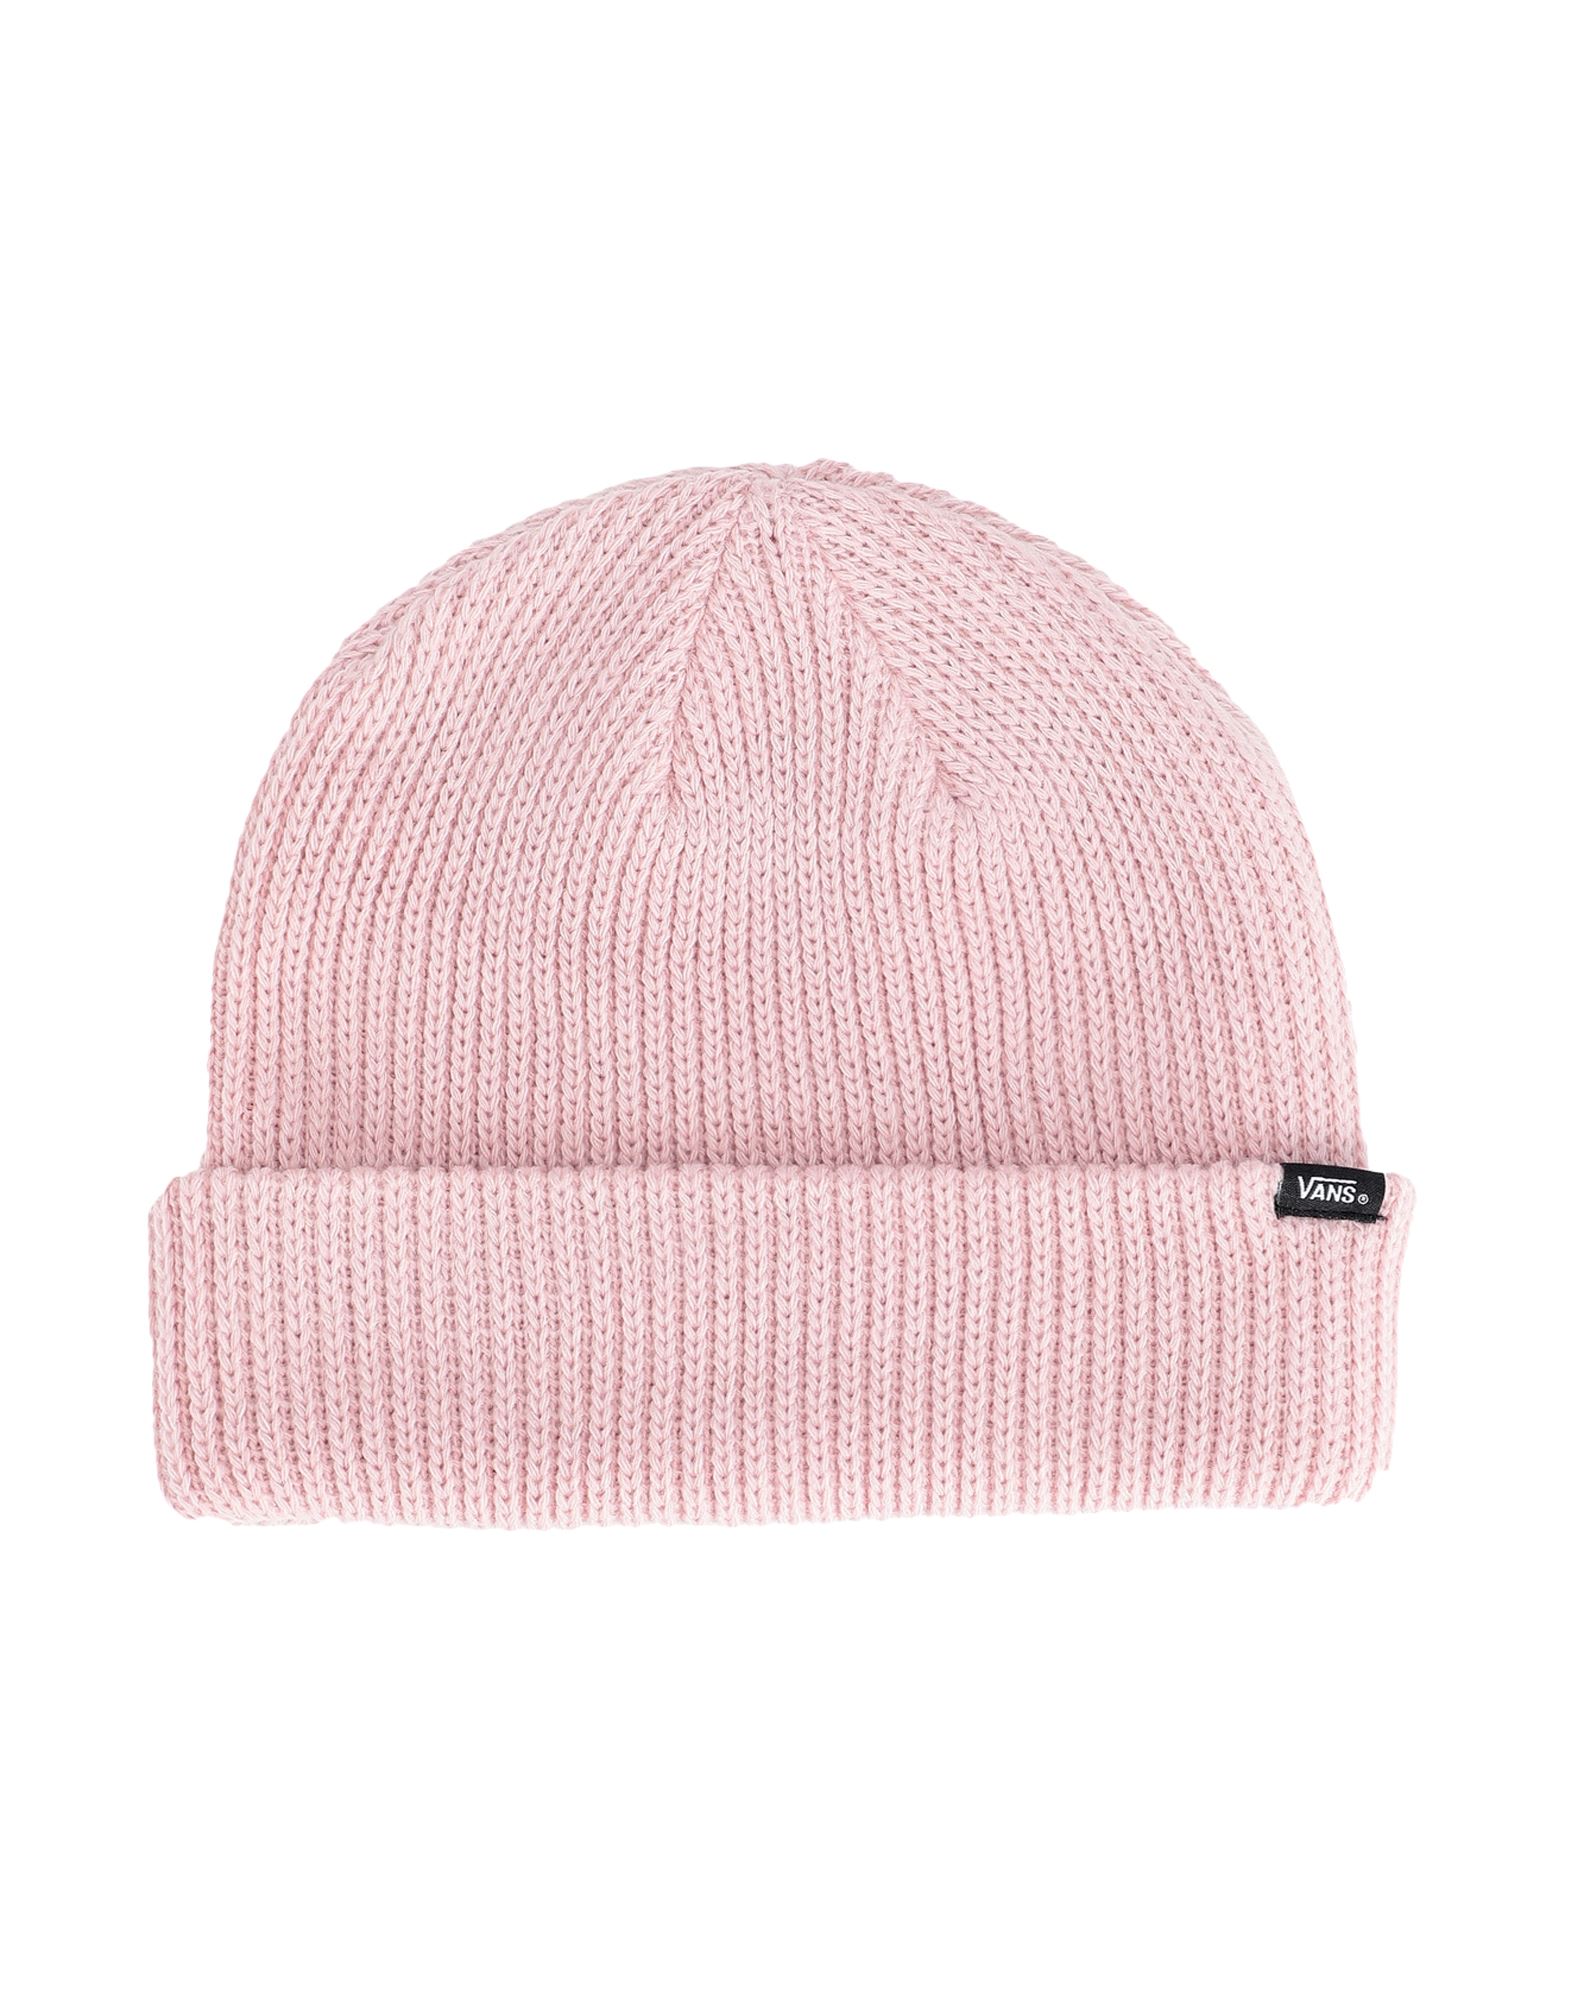 Vans Hats In Light Pink | ModeSens